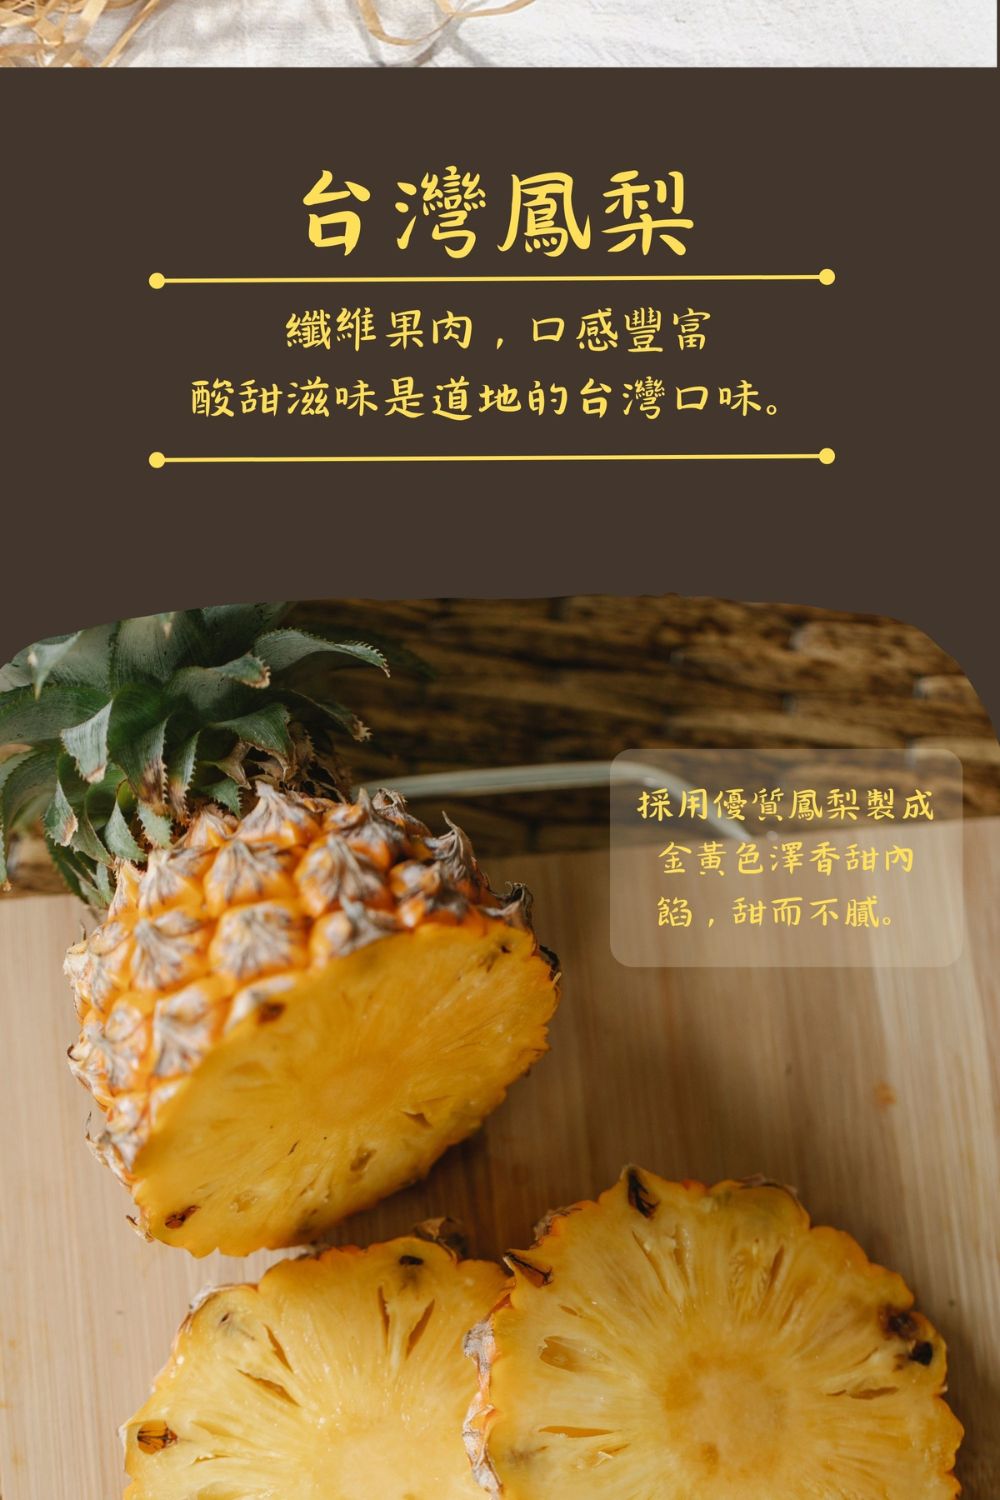 木匠手作 蛋是土鳳梨酥 8入/盒 中秋節最佳伴手禮品牌優惠